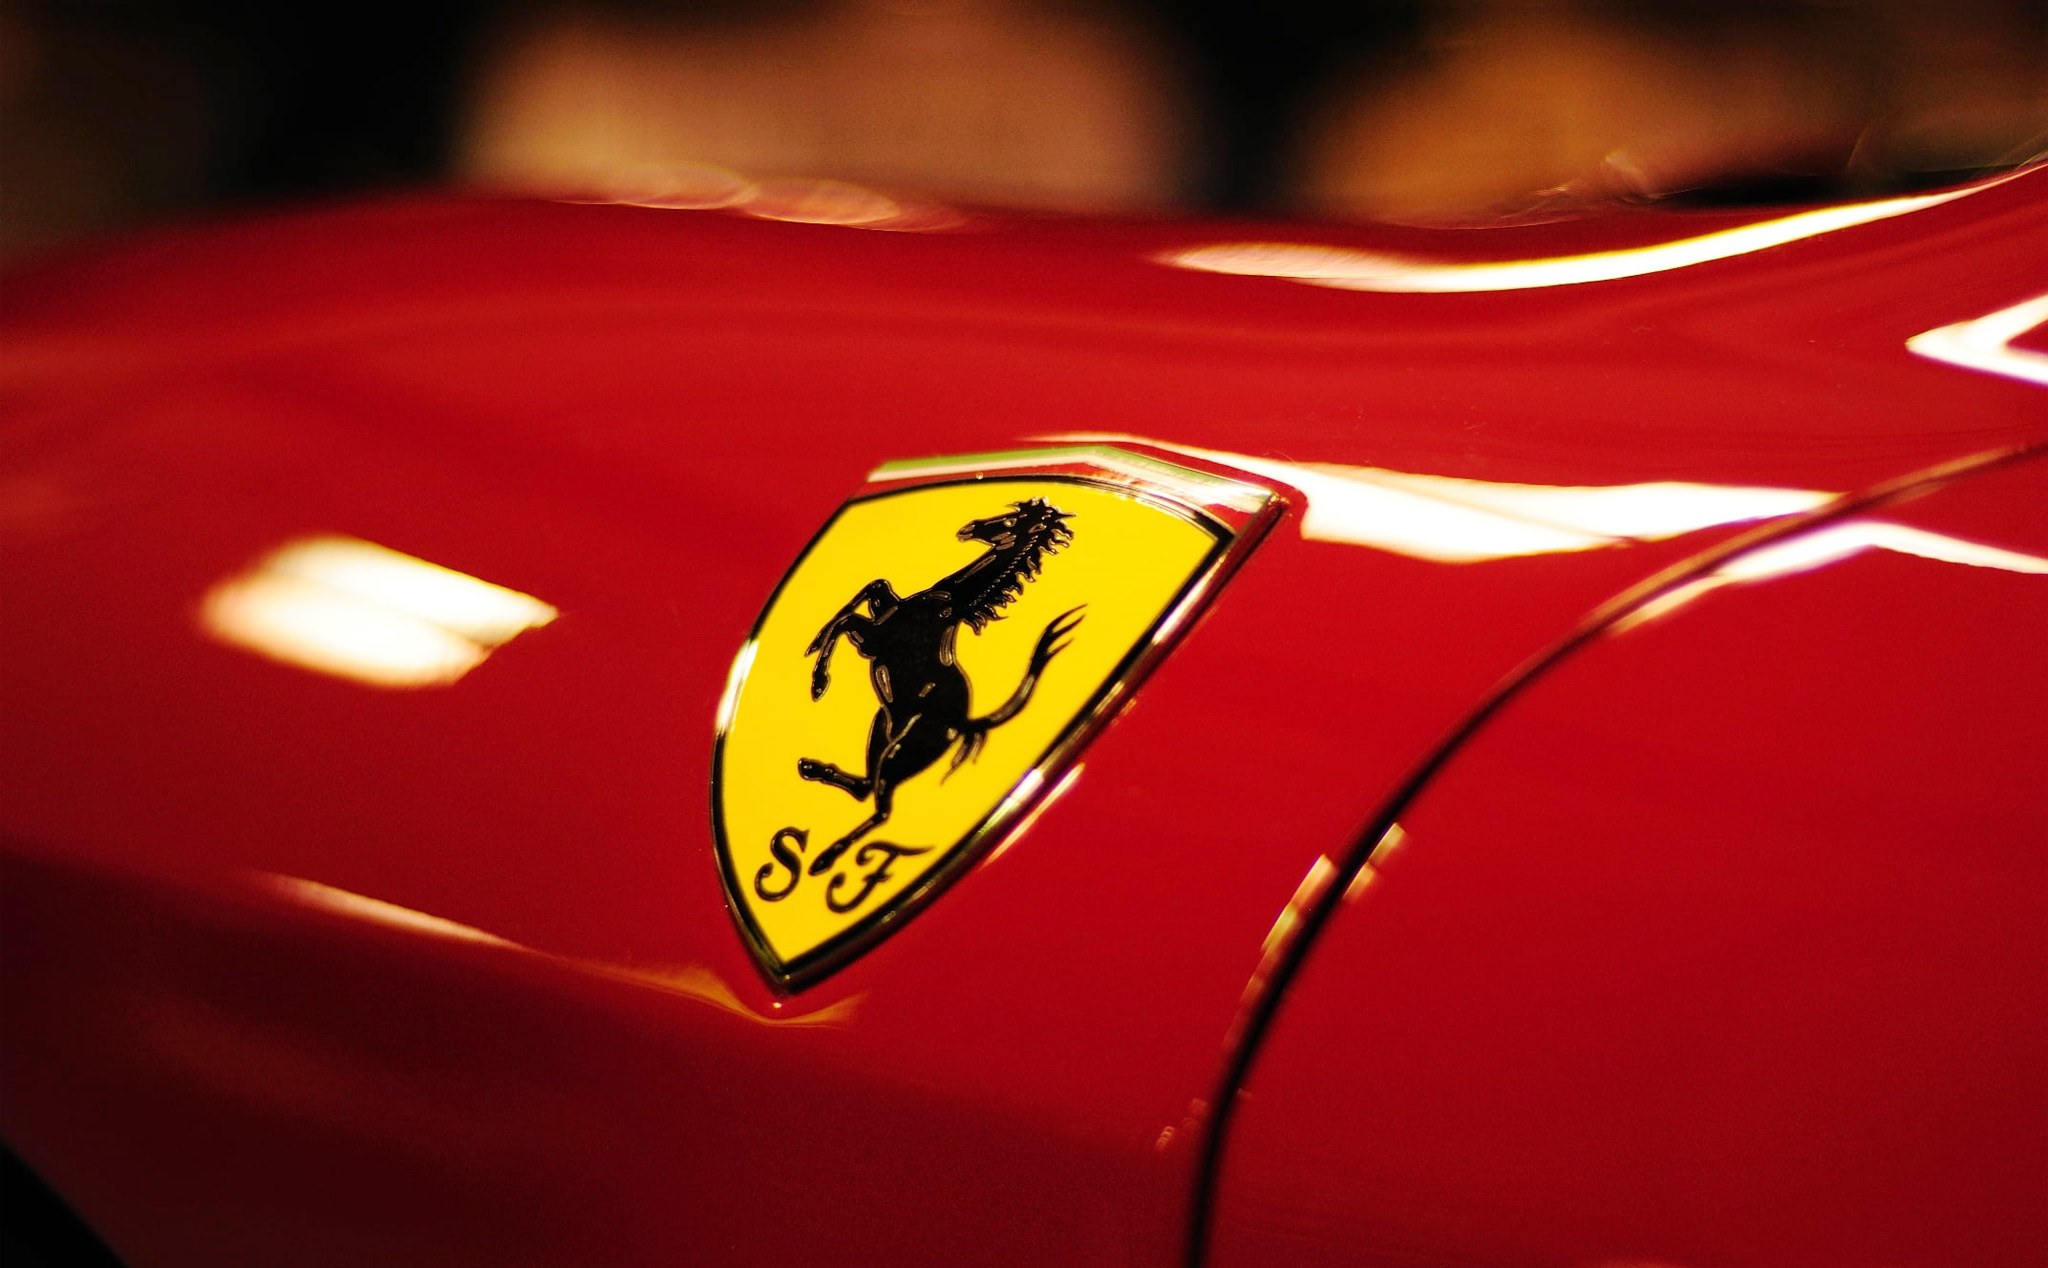 Cover_Ferrari.jpg